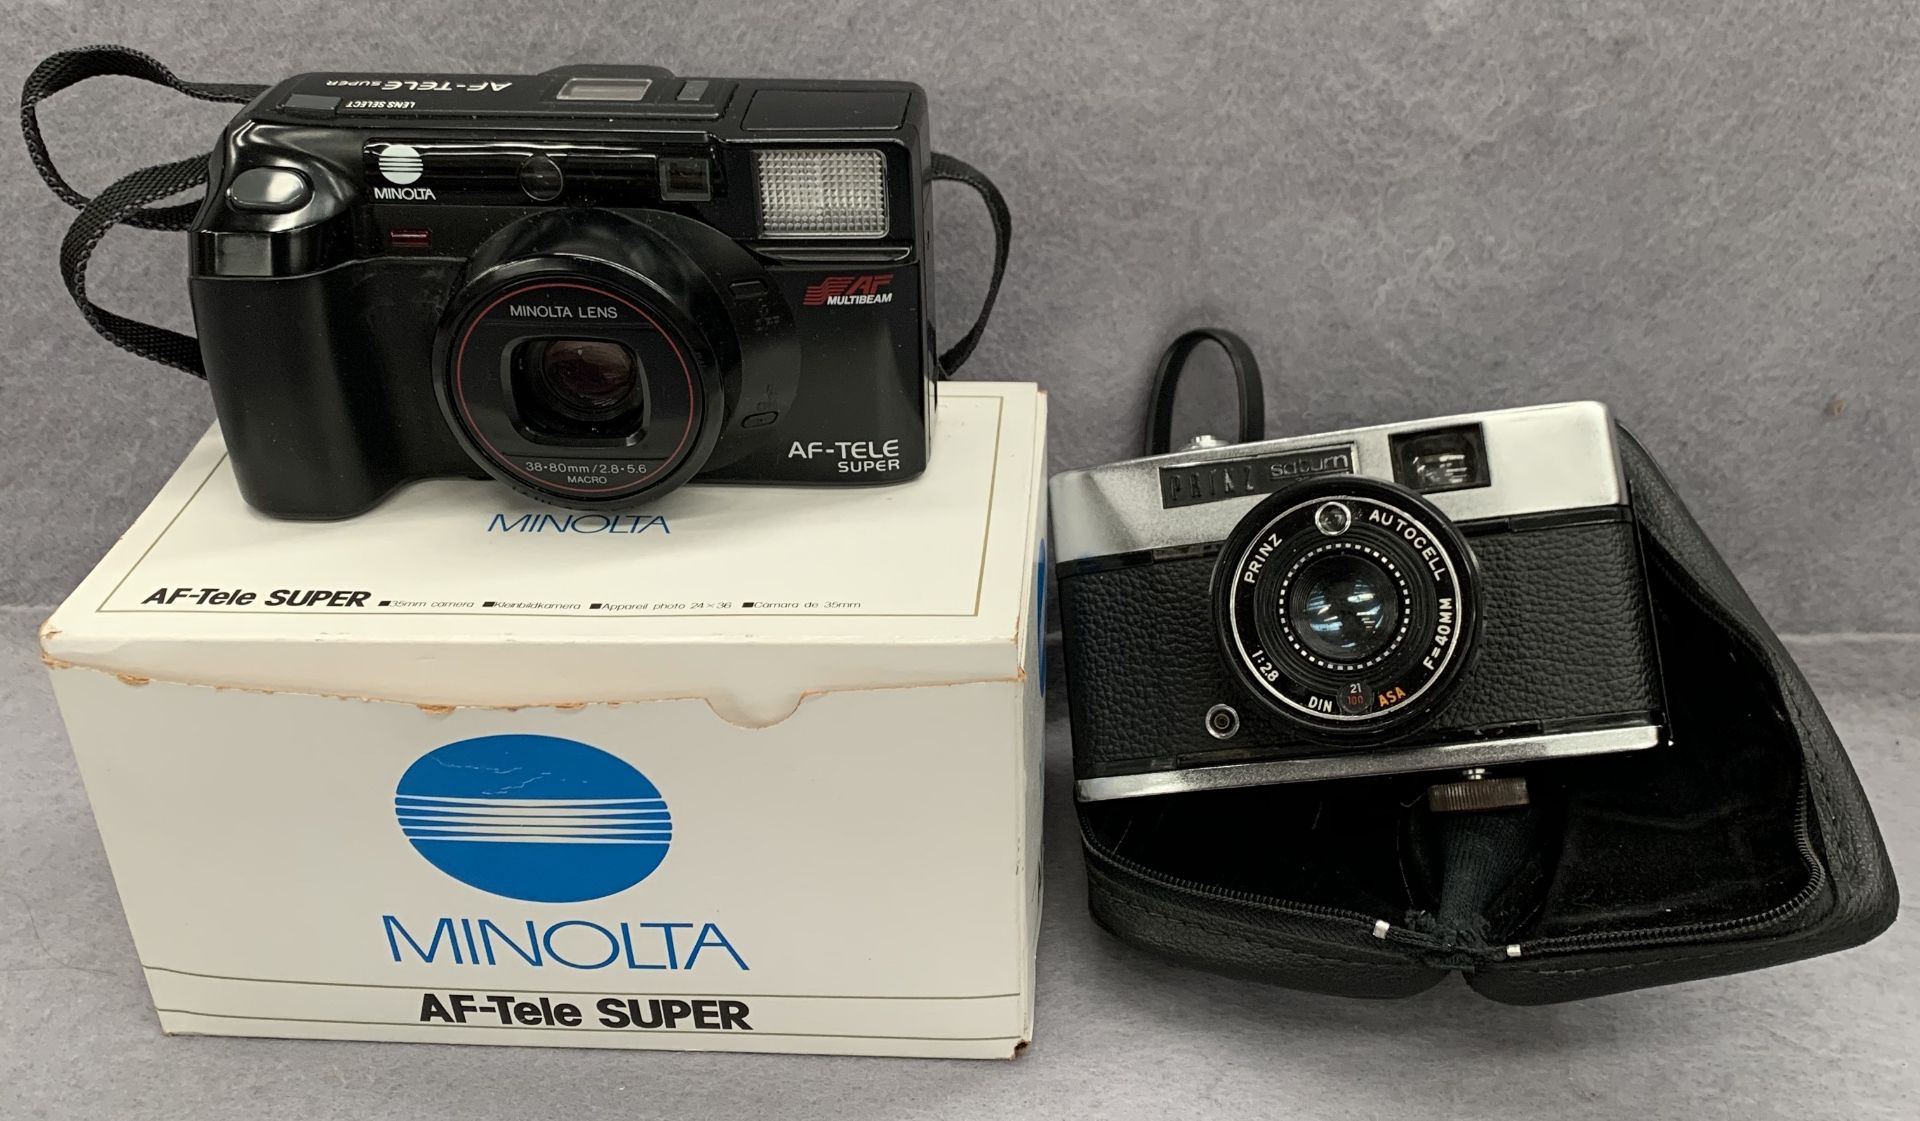 A Prinz Saturn 35 auto camera and a Minolta AF-Tele Super camera (boxed)